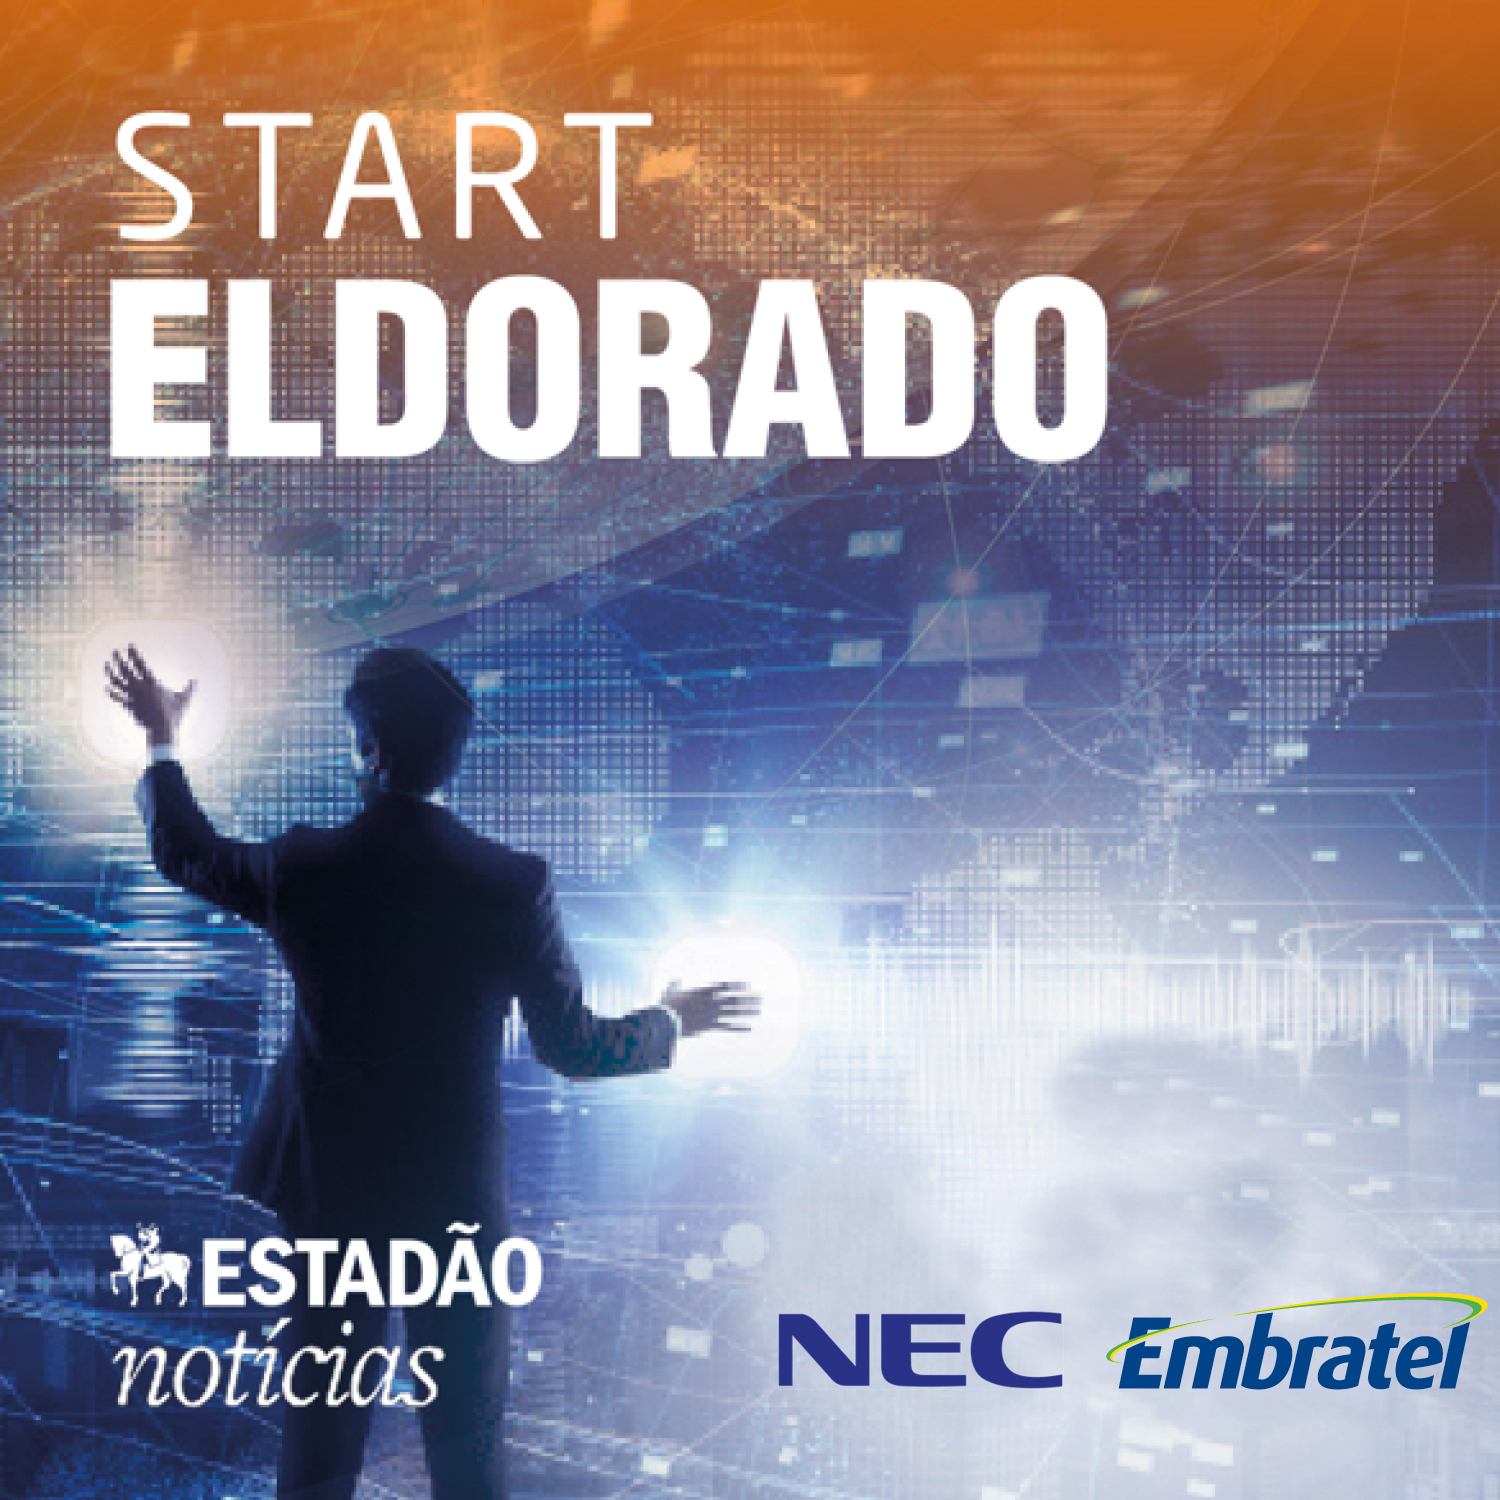 Tecnologia #146: #Start Eldorado: Tecnologia e governo digital - parte 2